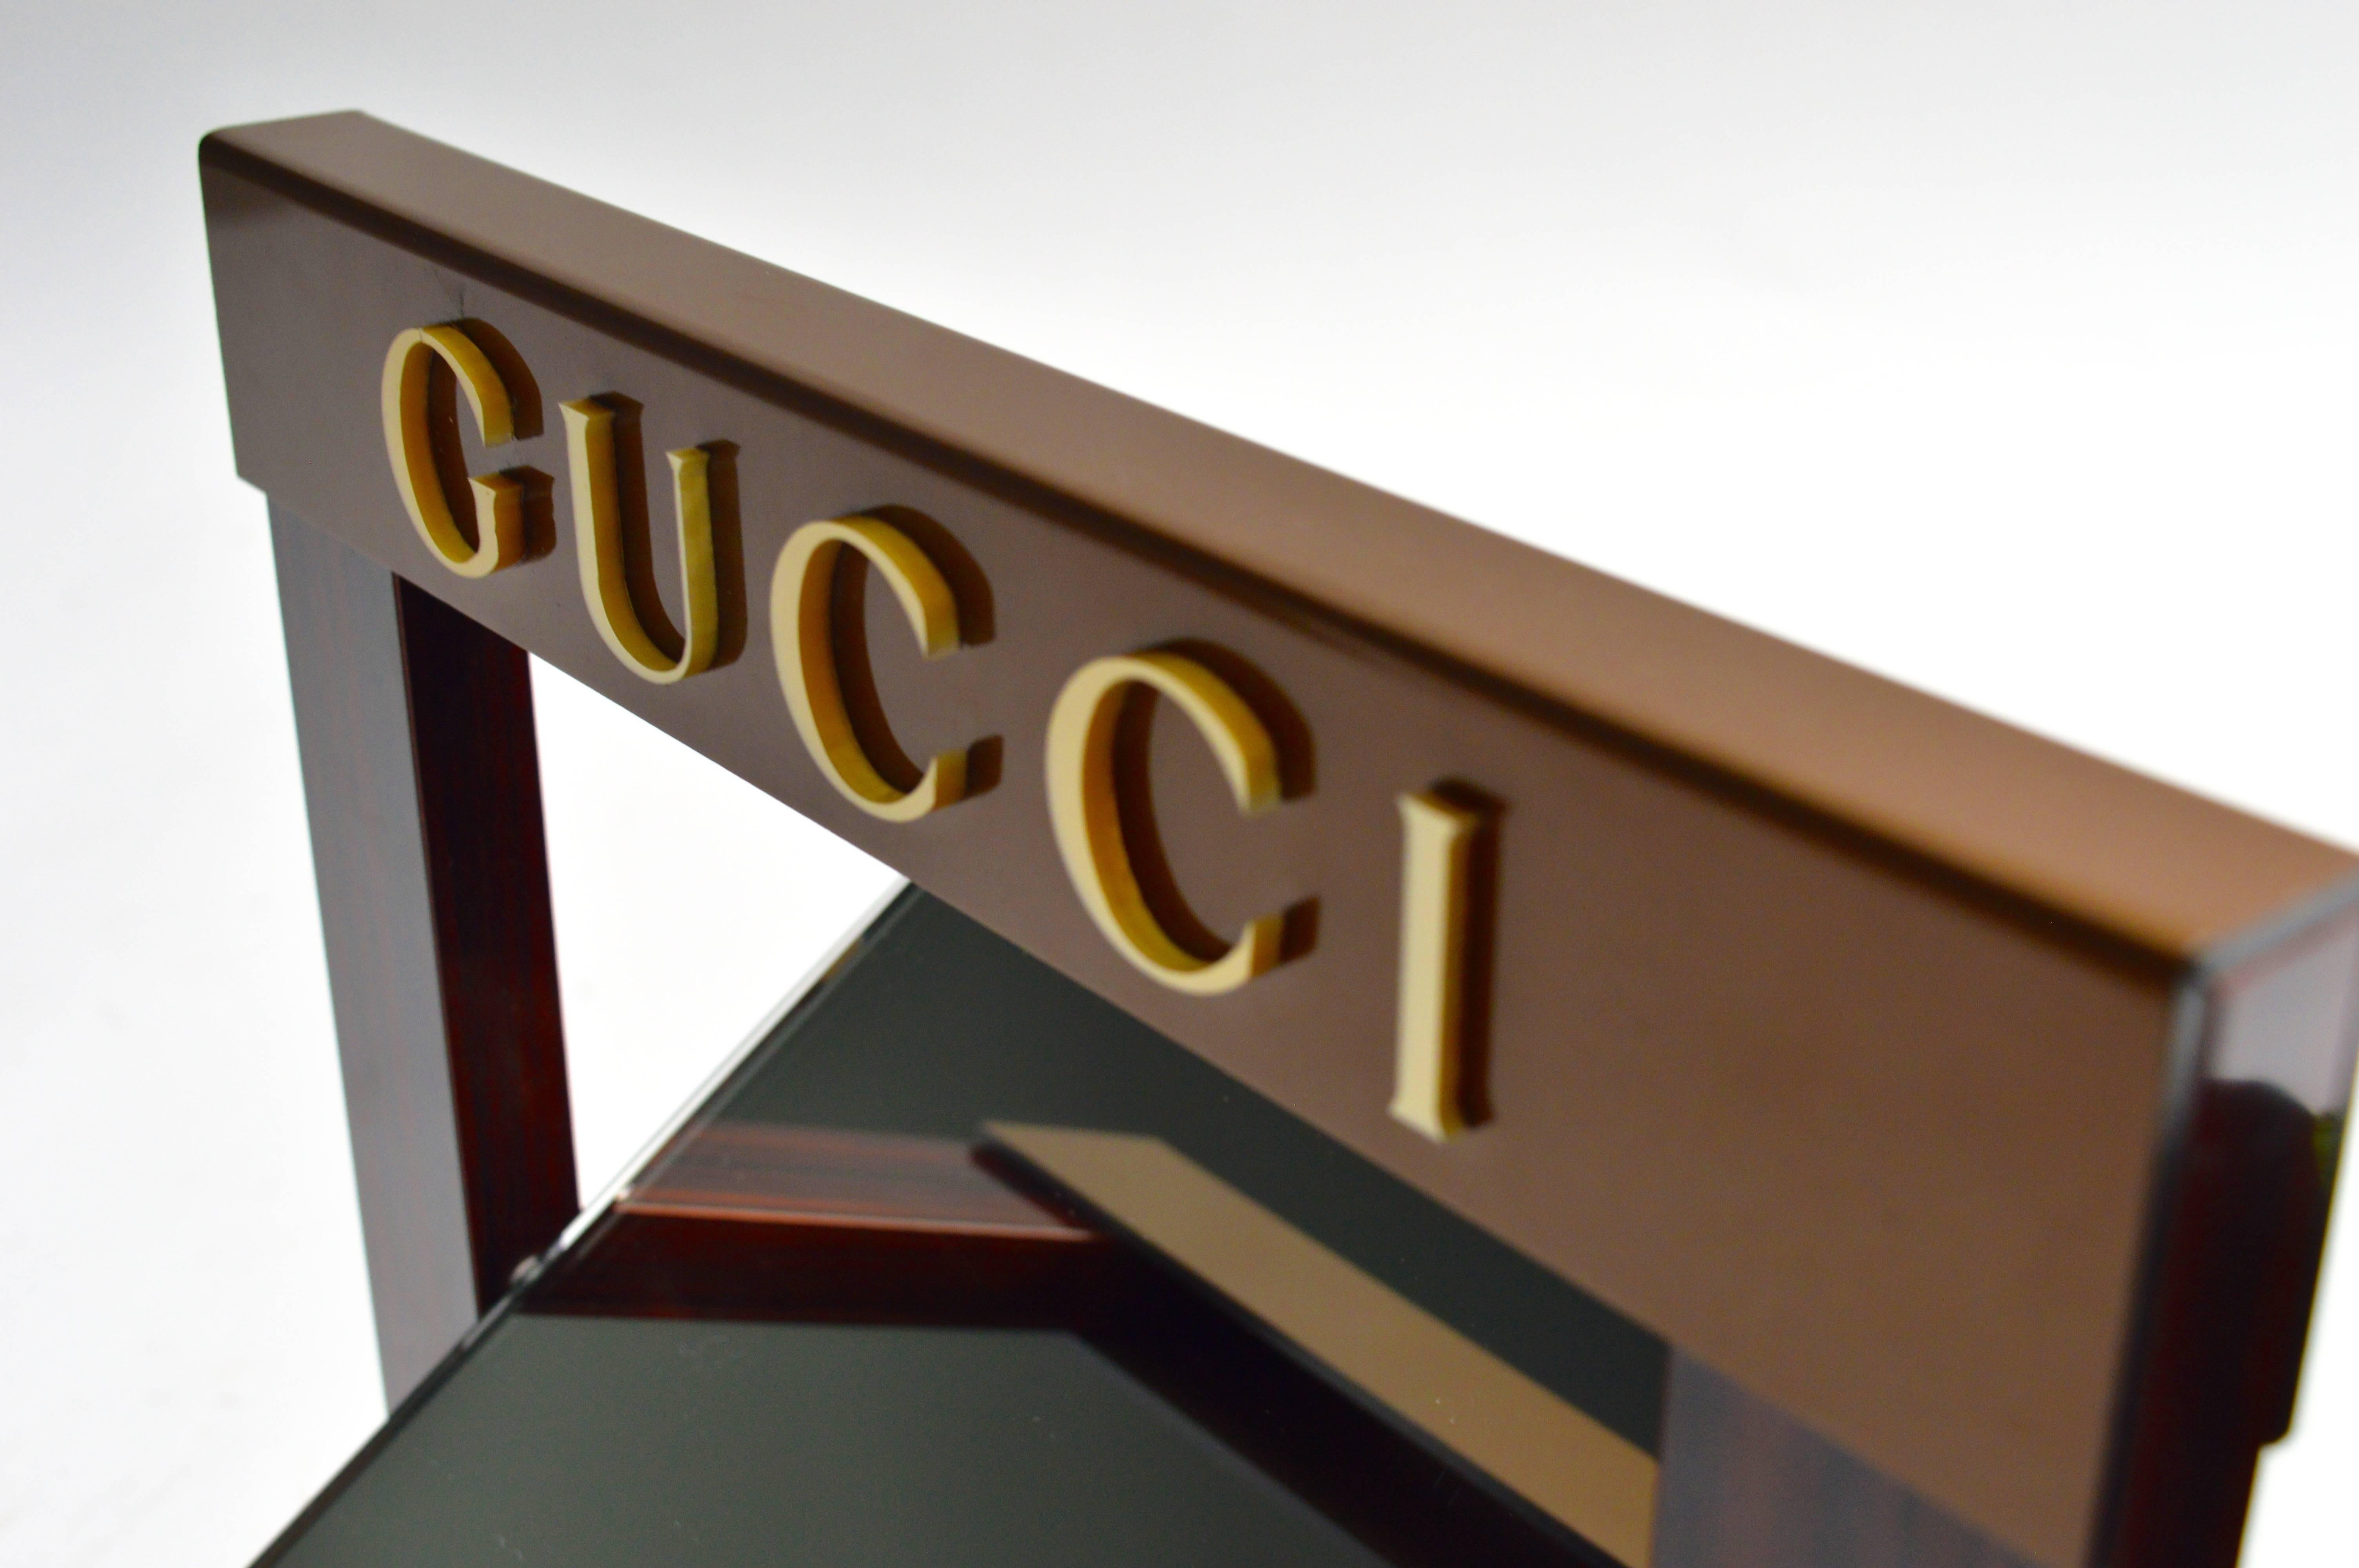 Vintage Gucci Händler Spiegel. Wahrscheinlich wurde sie von Gucci als Auslage im Geschäft verwendet. Die Vorderseite des Glases ist in perfektem Zustand. Die Unterlage hat einen Riss und wurde geklebt. Leichte Risse in einem der Buchstaben auf der